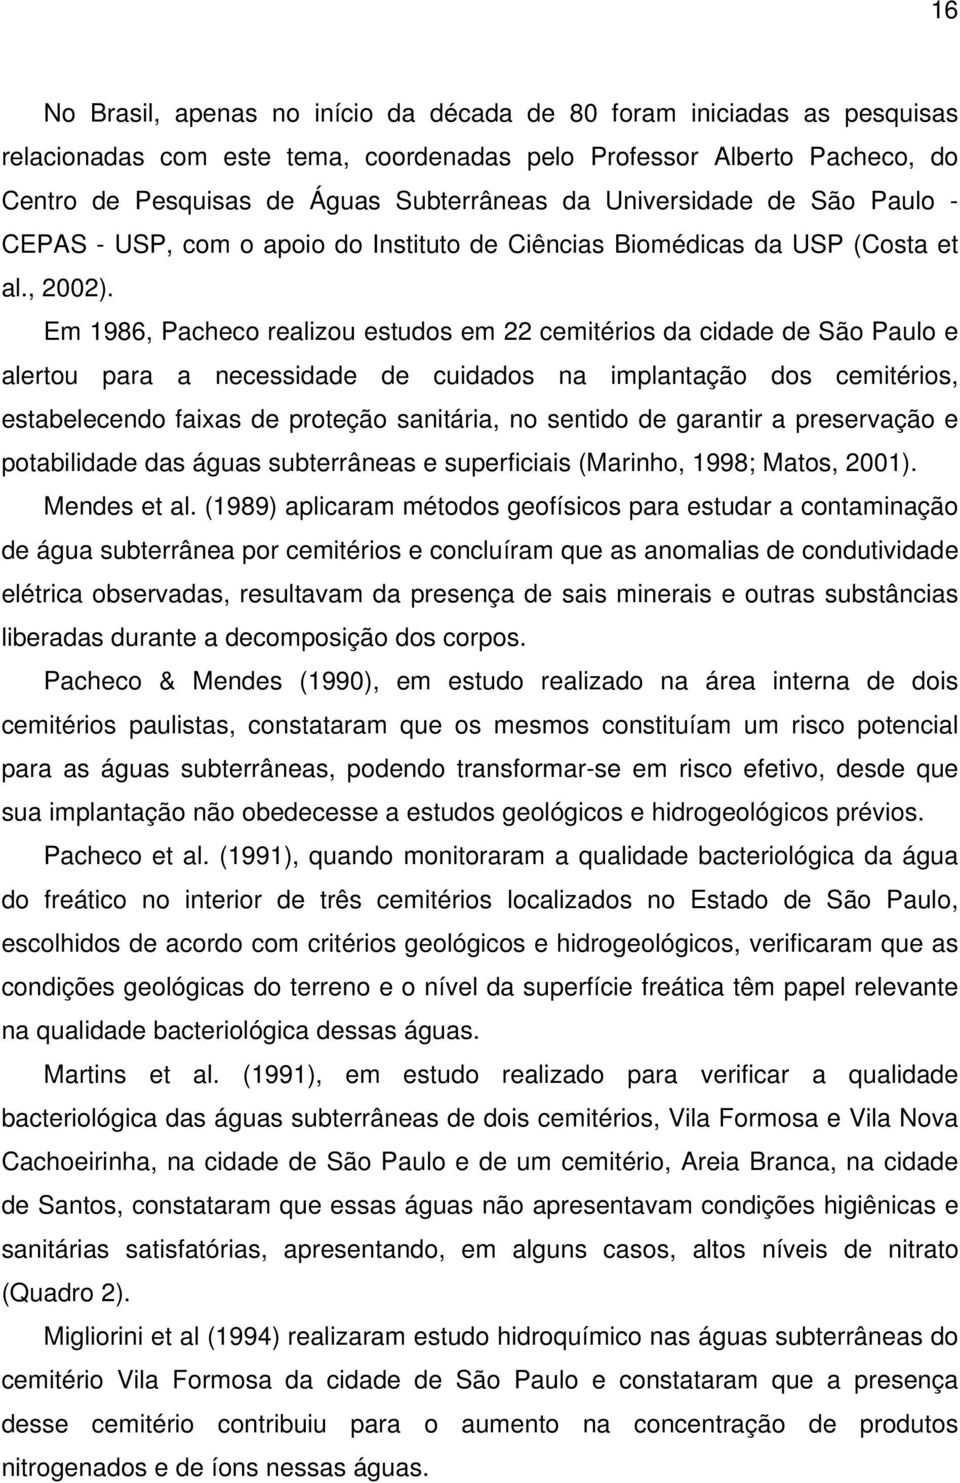 Em 1986, Pacheco realizou estudos em 22 cemitérios da cidade de São Paulo e alertou para a necessidade de cuidados na implantação dos cemitérios, estabelecendo faixas de proteção sanitária, no